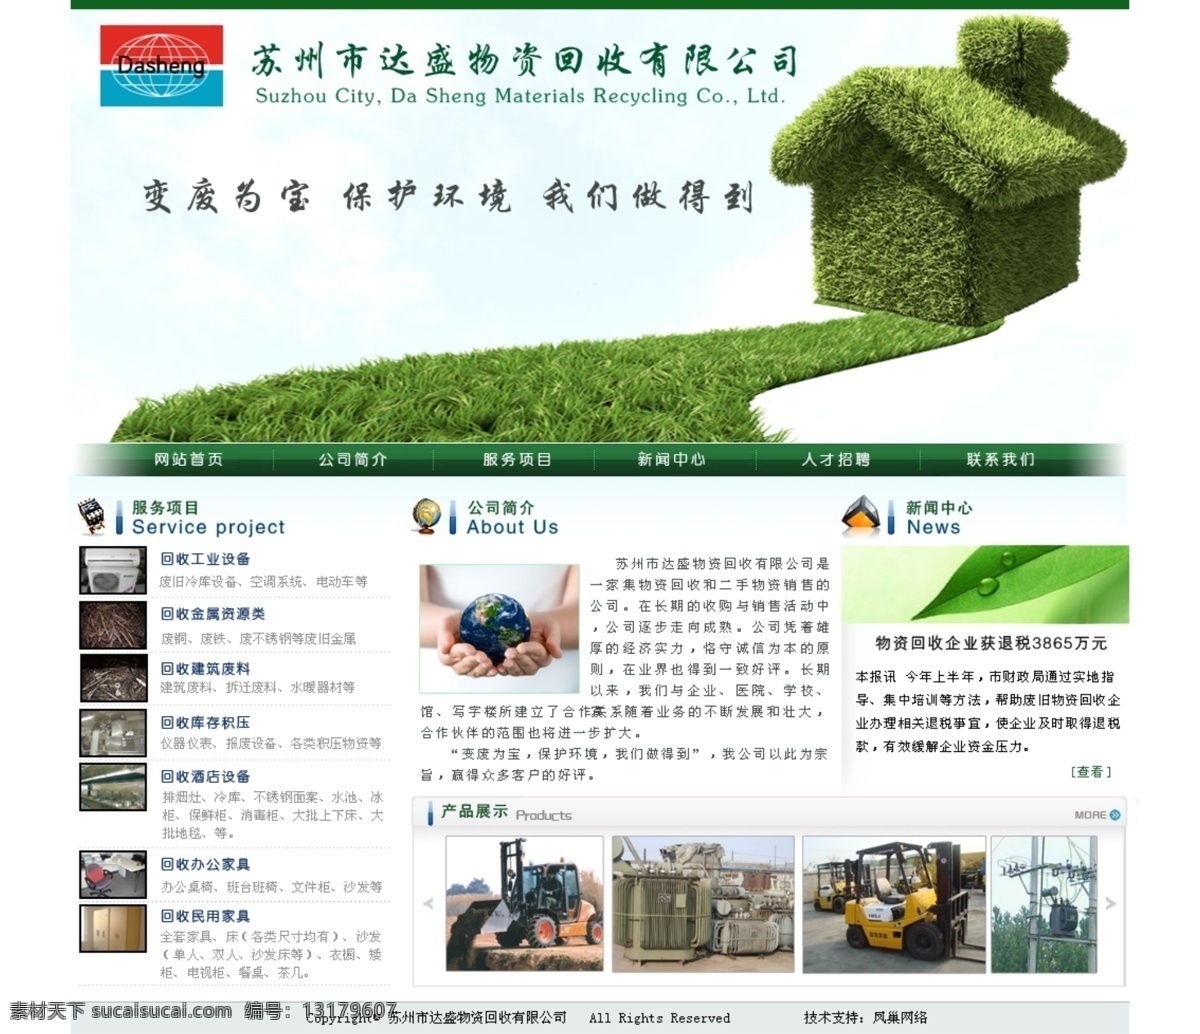 达 盛 物资 网页设计 网页模板 网站设计 源文件 中文模版 物资回收 网页素材